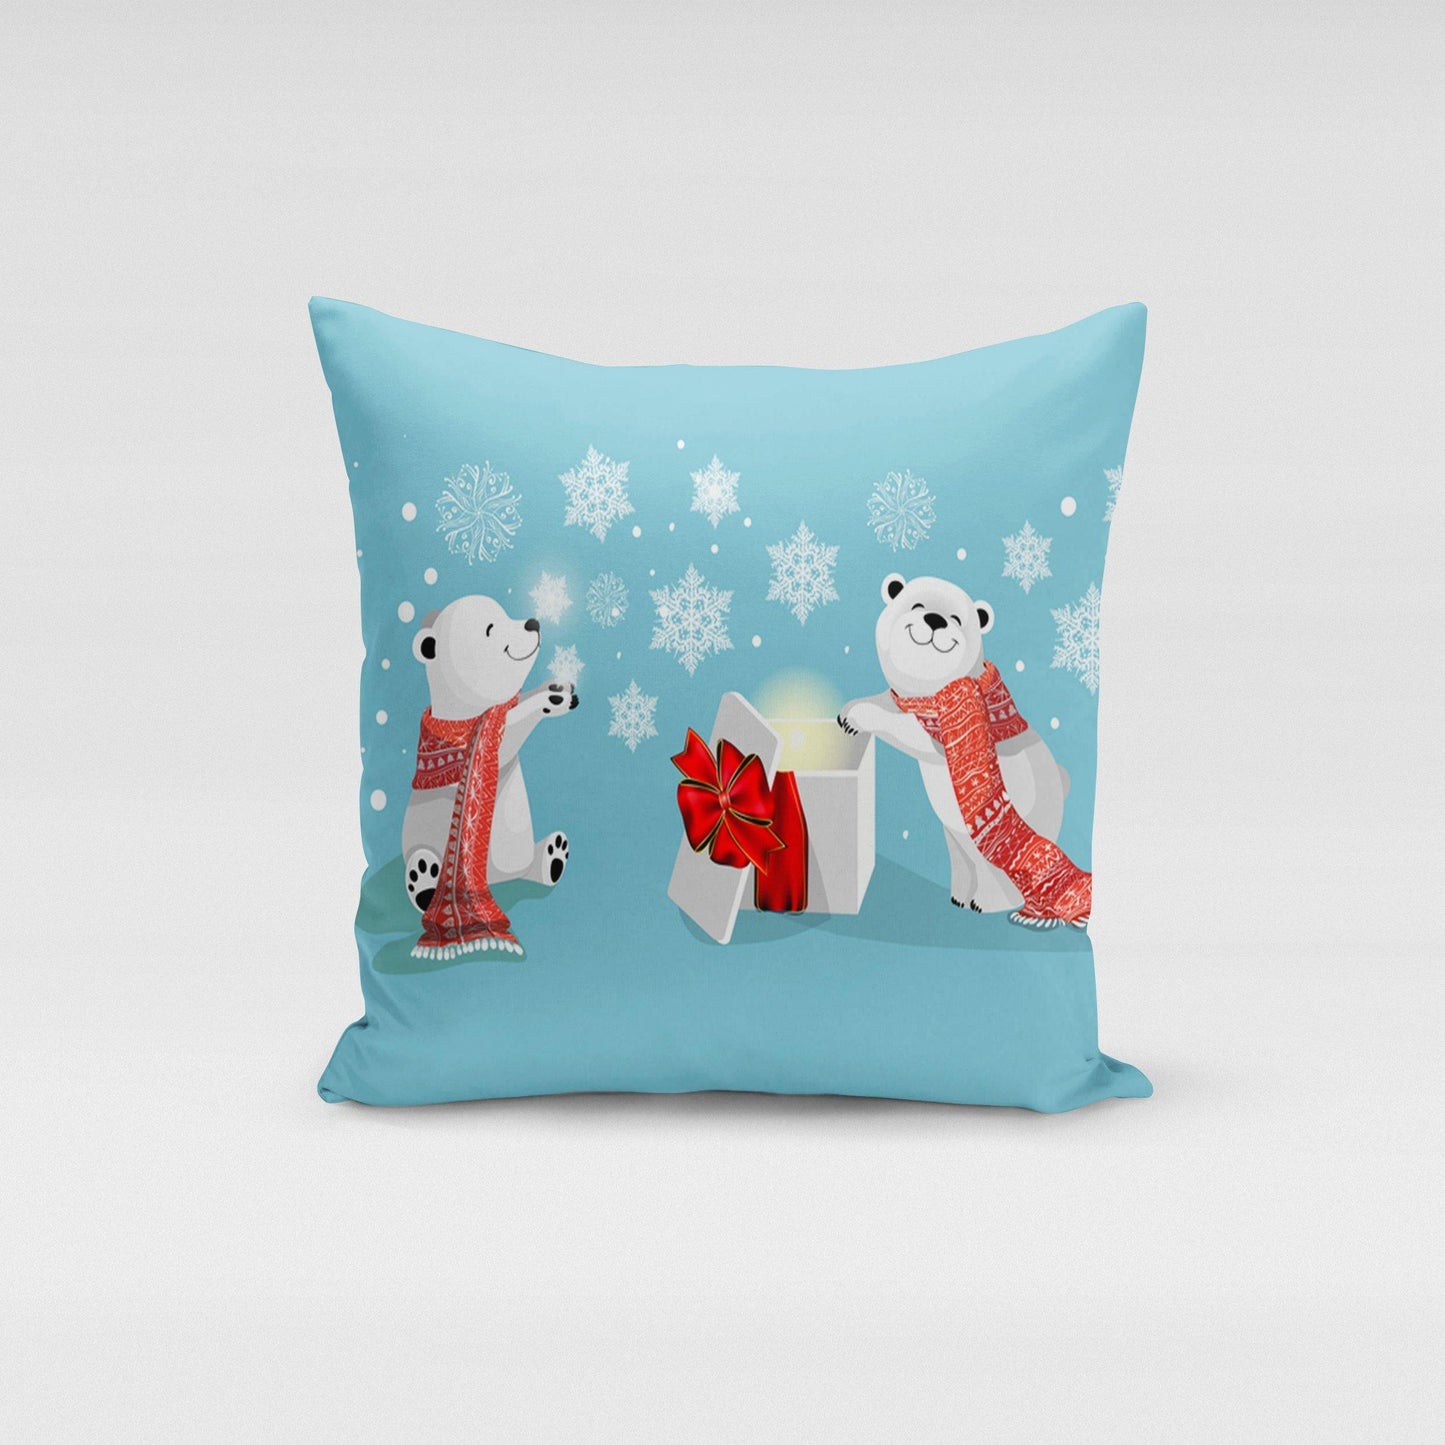 Polar Bears Pillow Cover